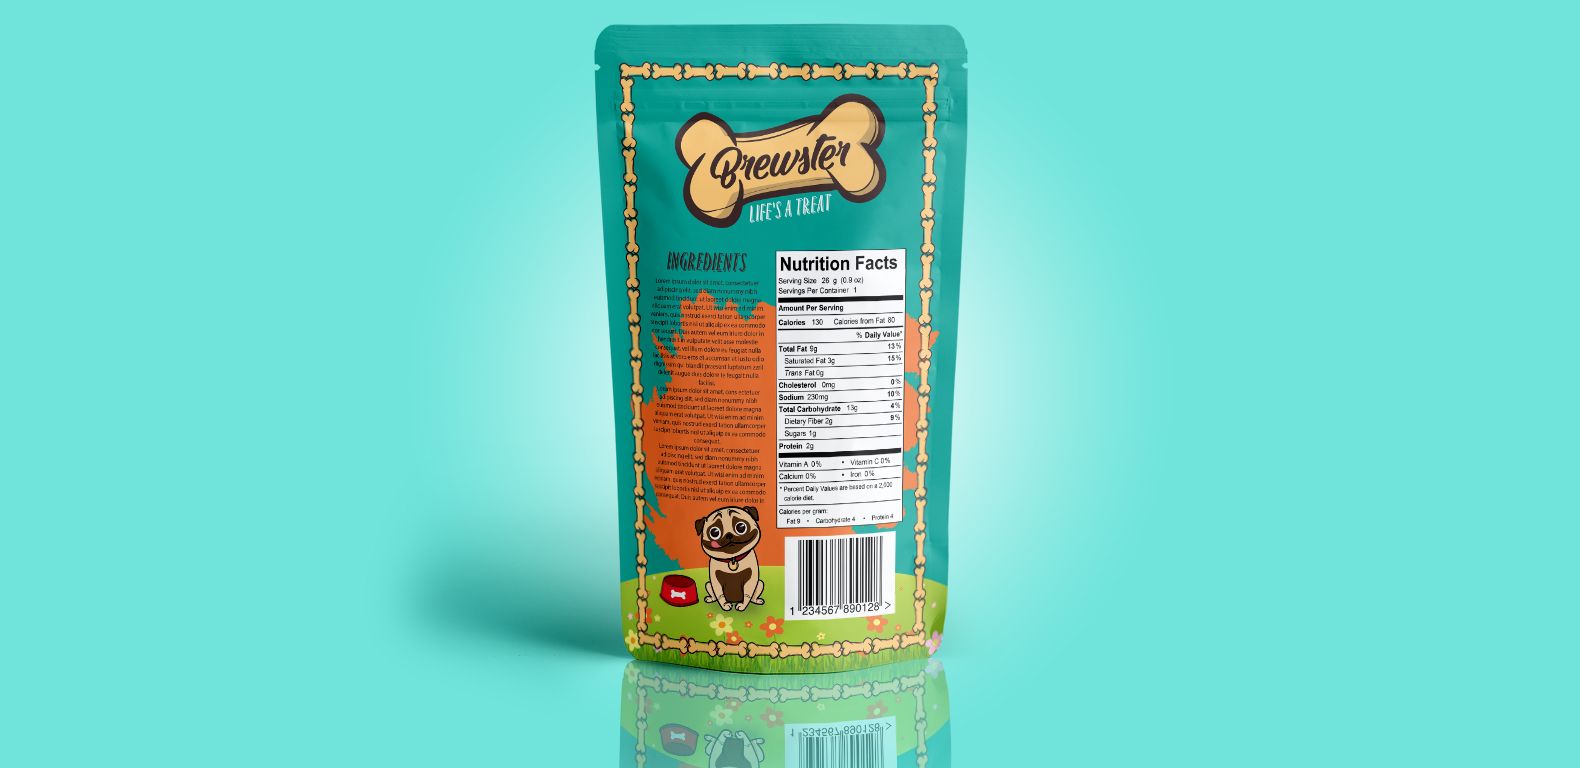 Packaging-Design-Brewster-pet-food-back